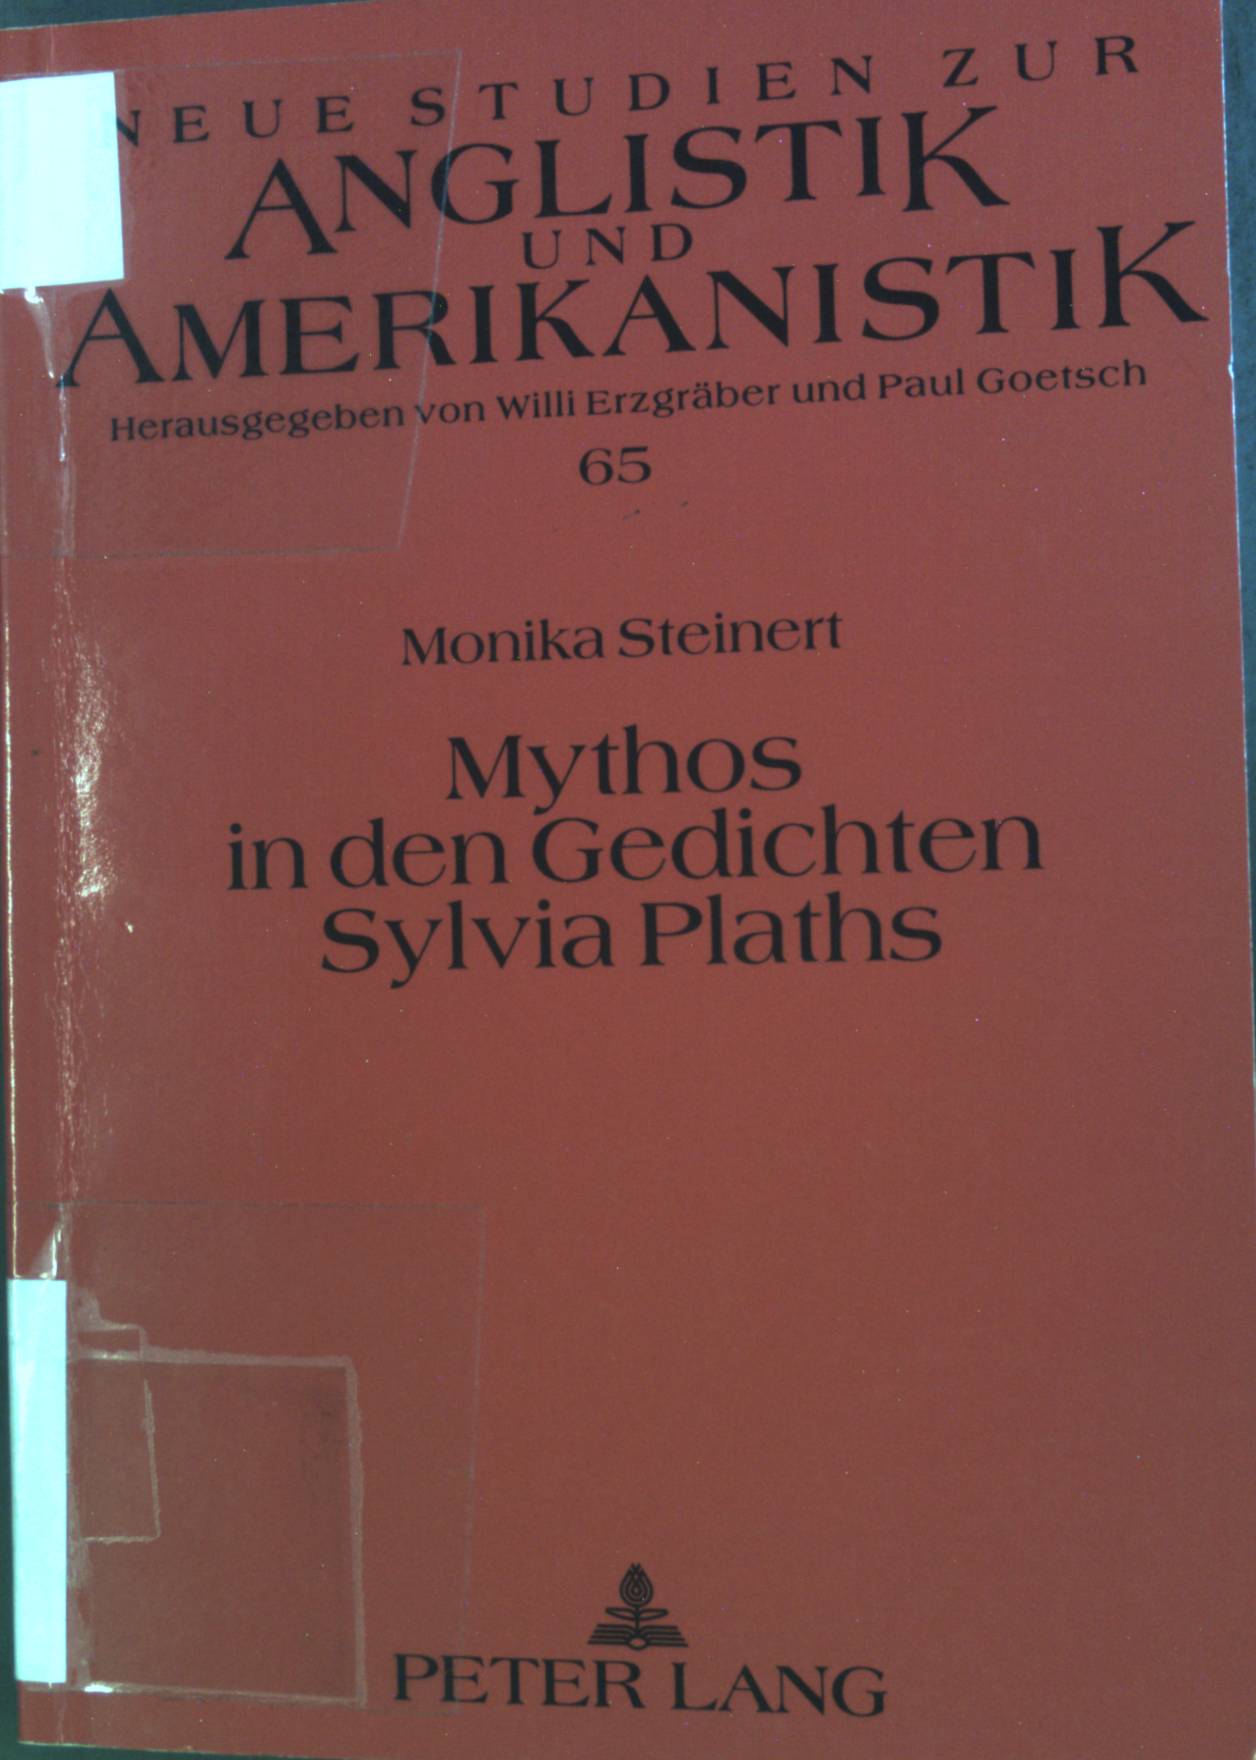 Mythos in den Gedichten Sylvia Plaths. Neue Studien zur Anglistik und Amerikanistik ; Bd. 65. - Steinert, Monika